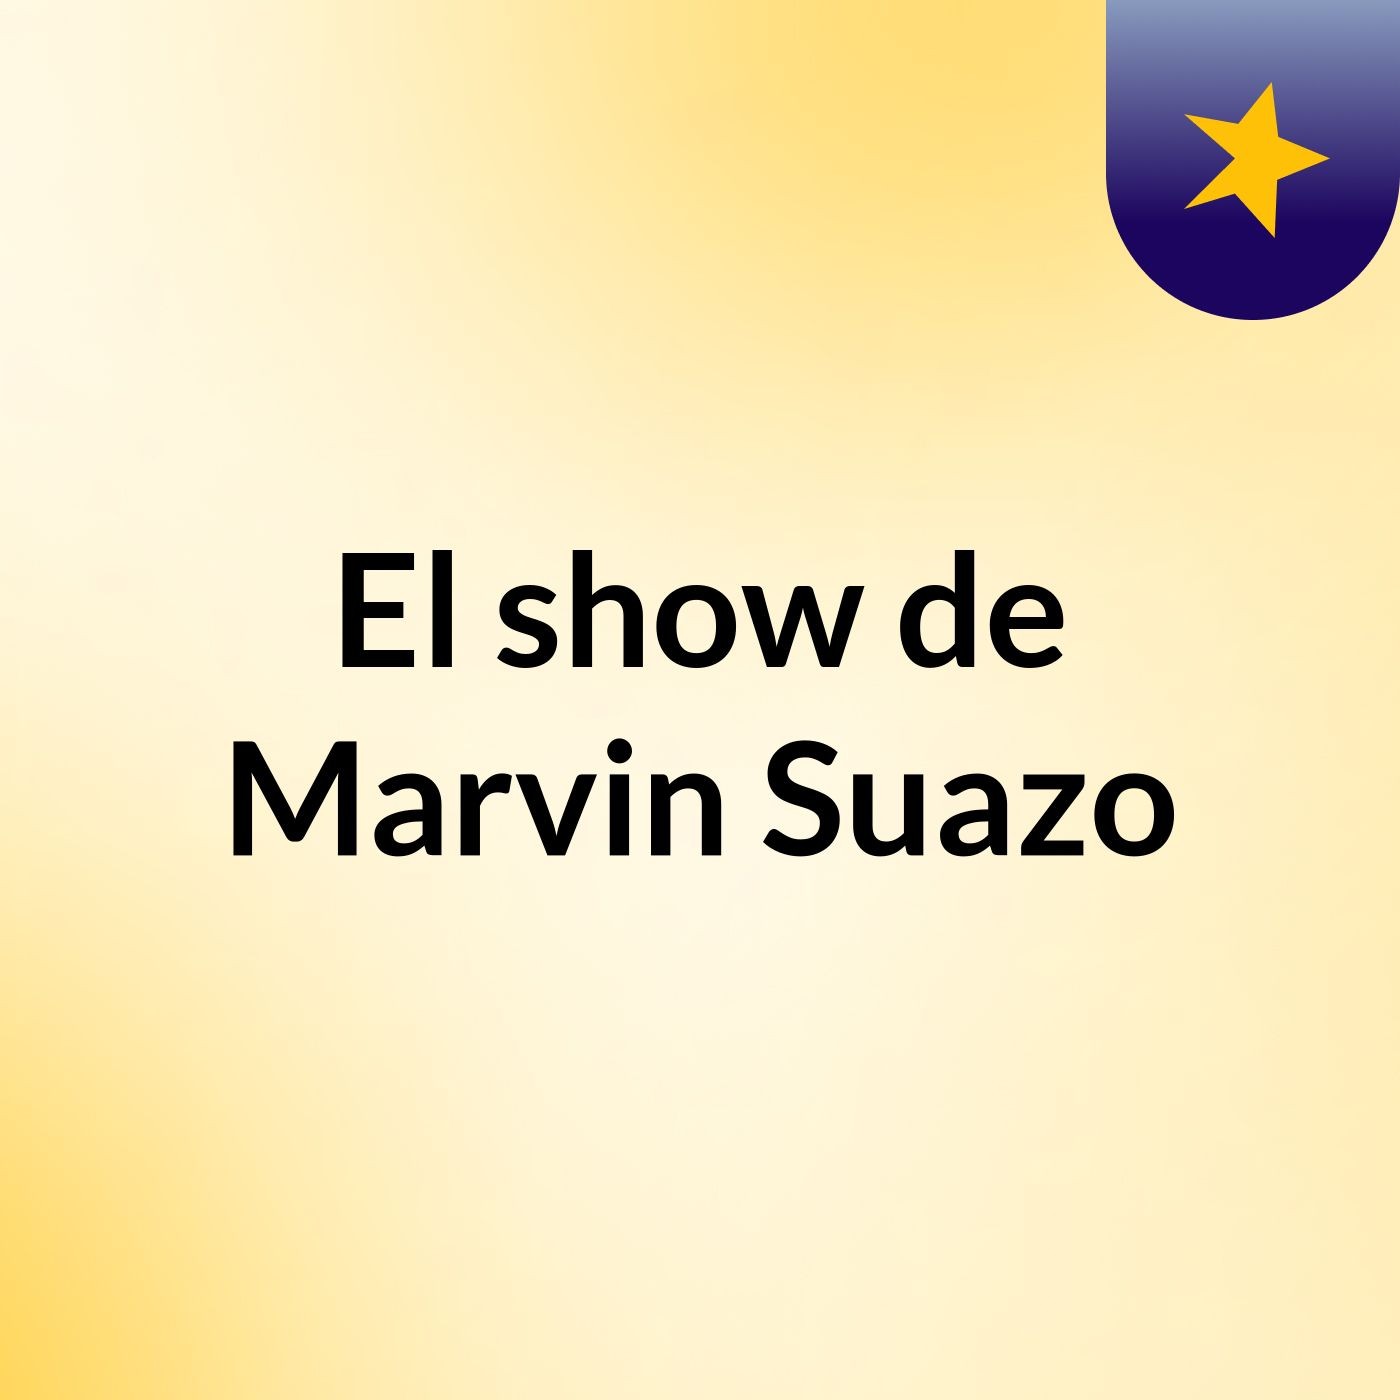 El show de Marvin Suazo